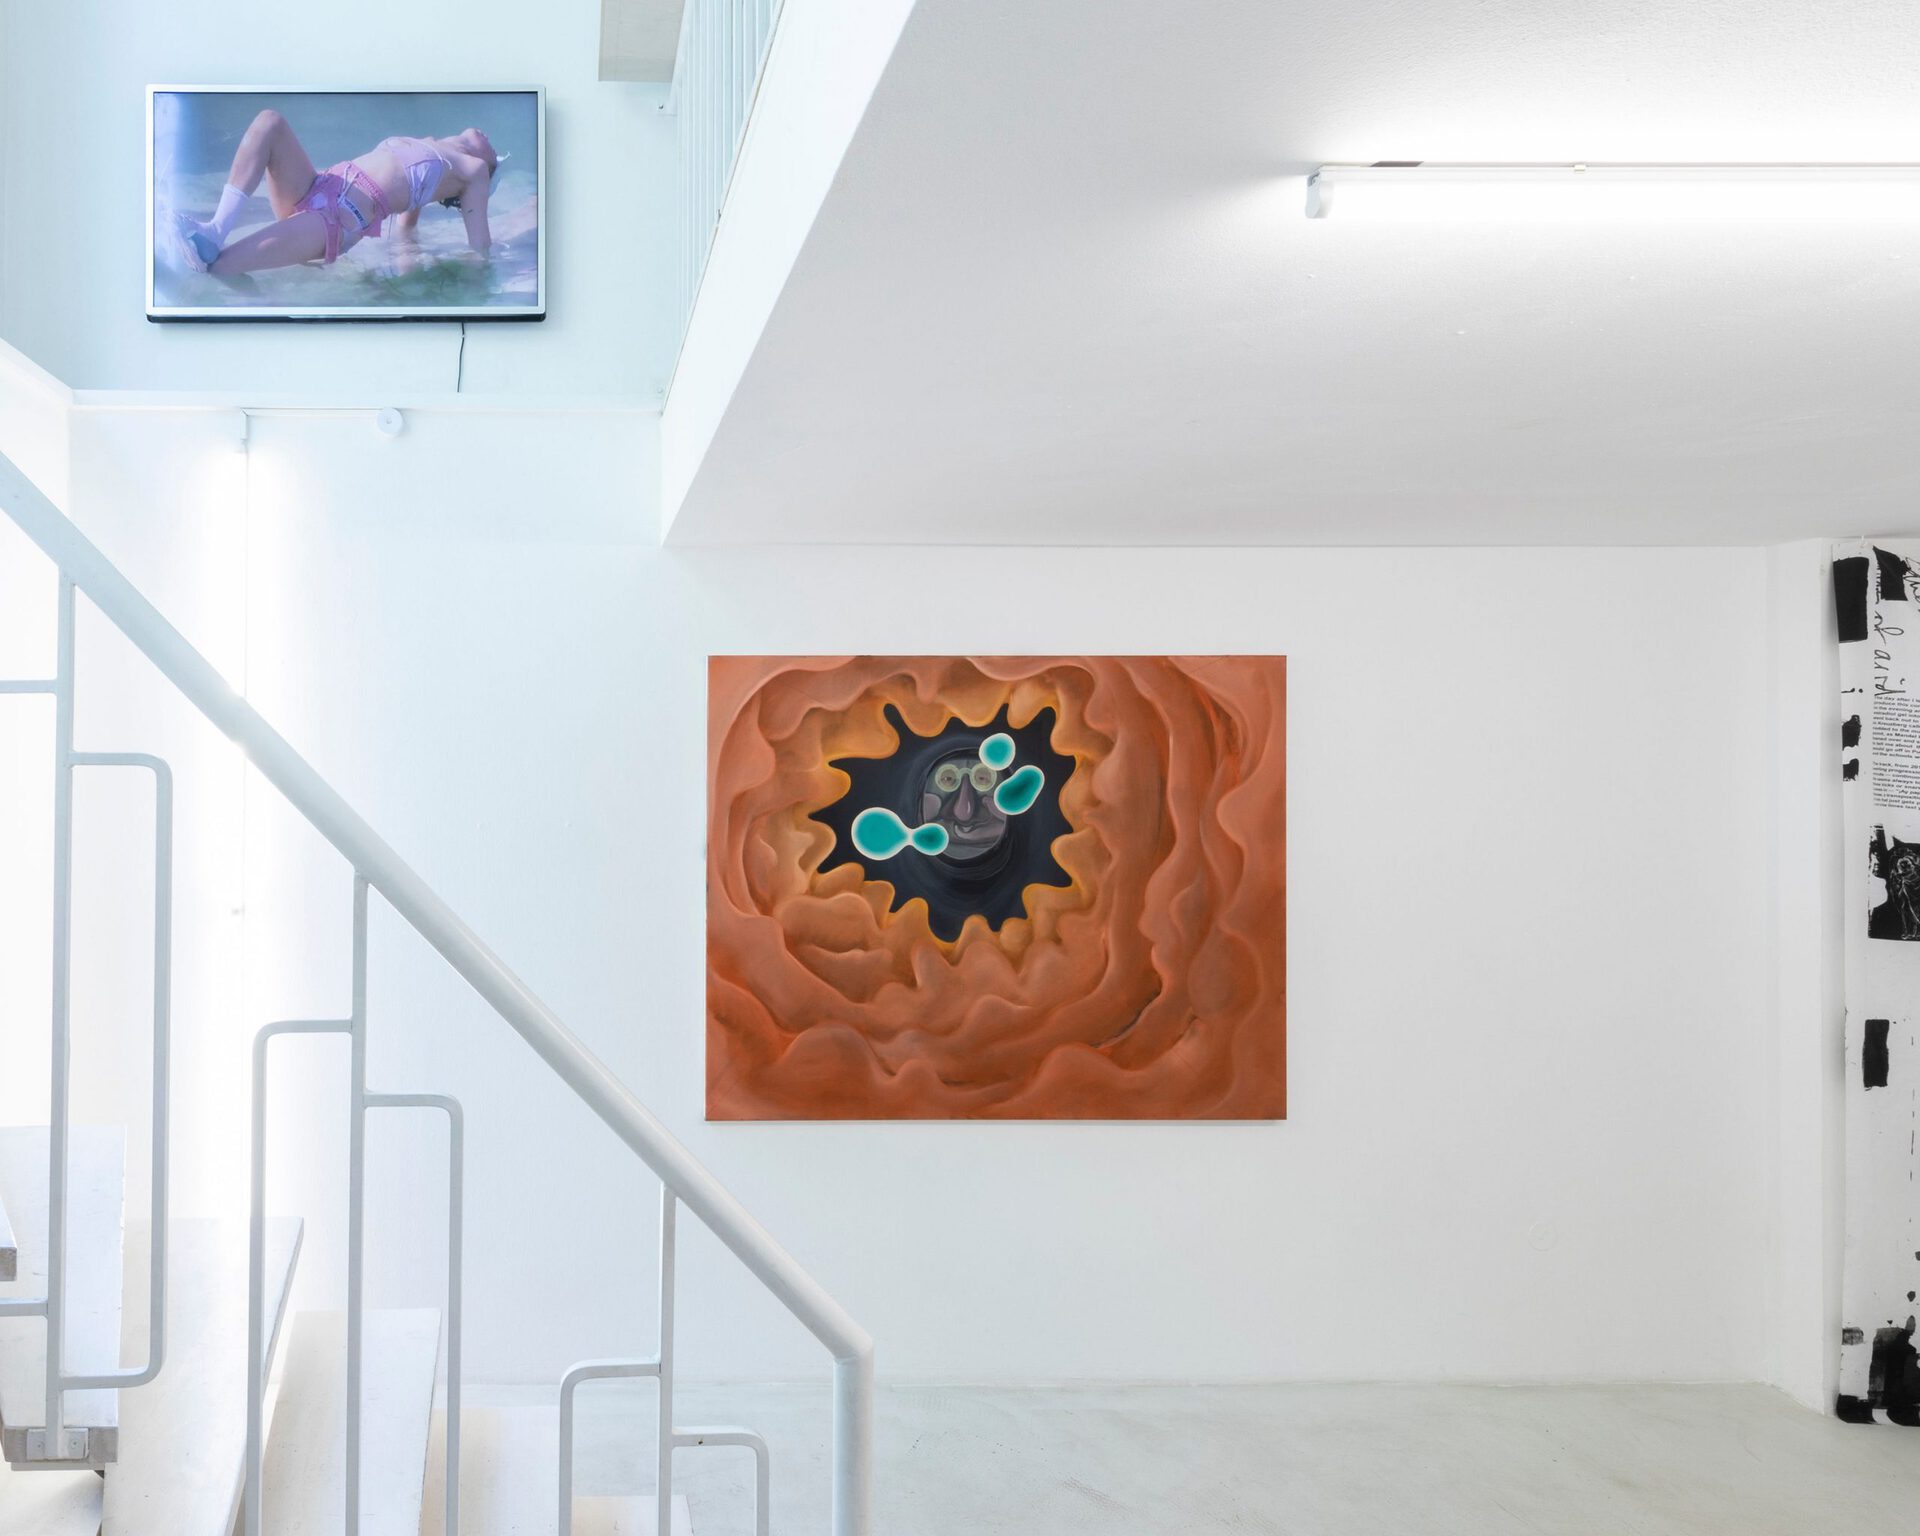 Christian Hoosen, Blick aus meinem Arsch, 2020, Oil on canvas, 120 x 150 cm